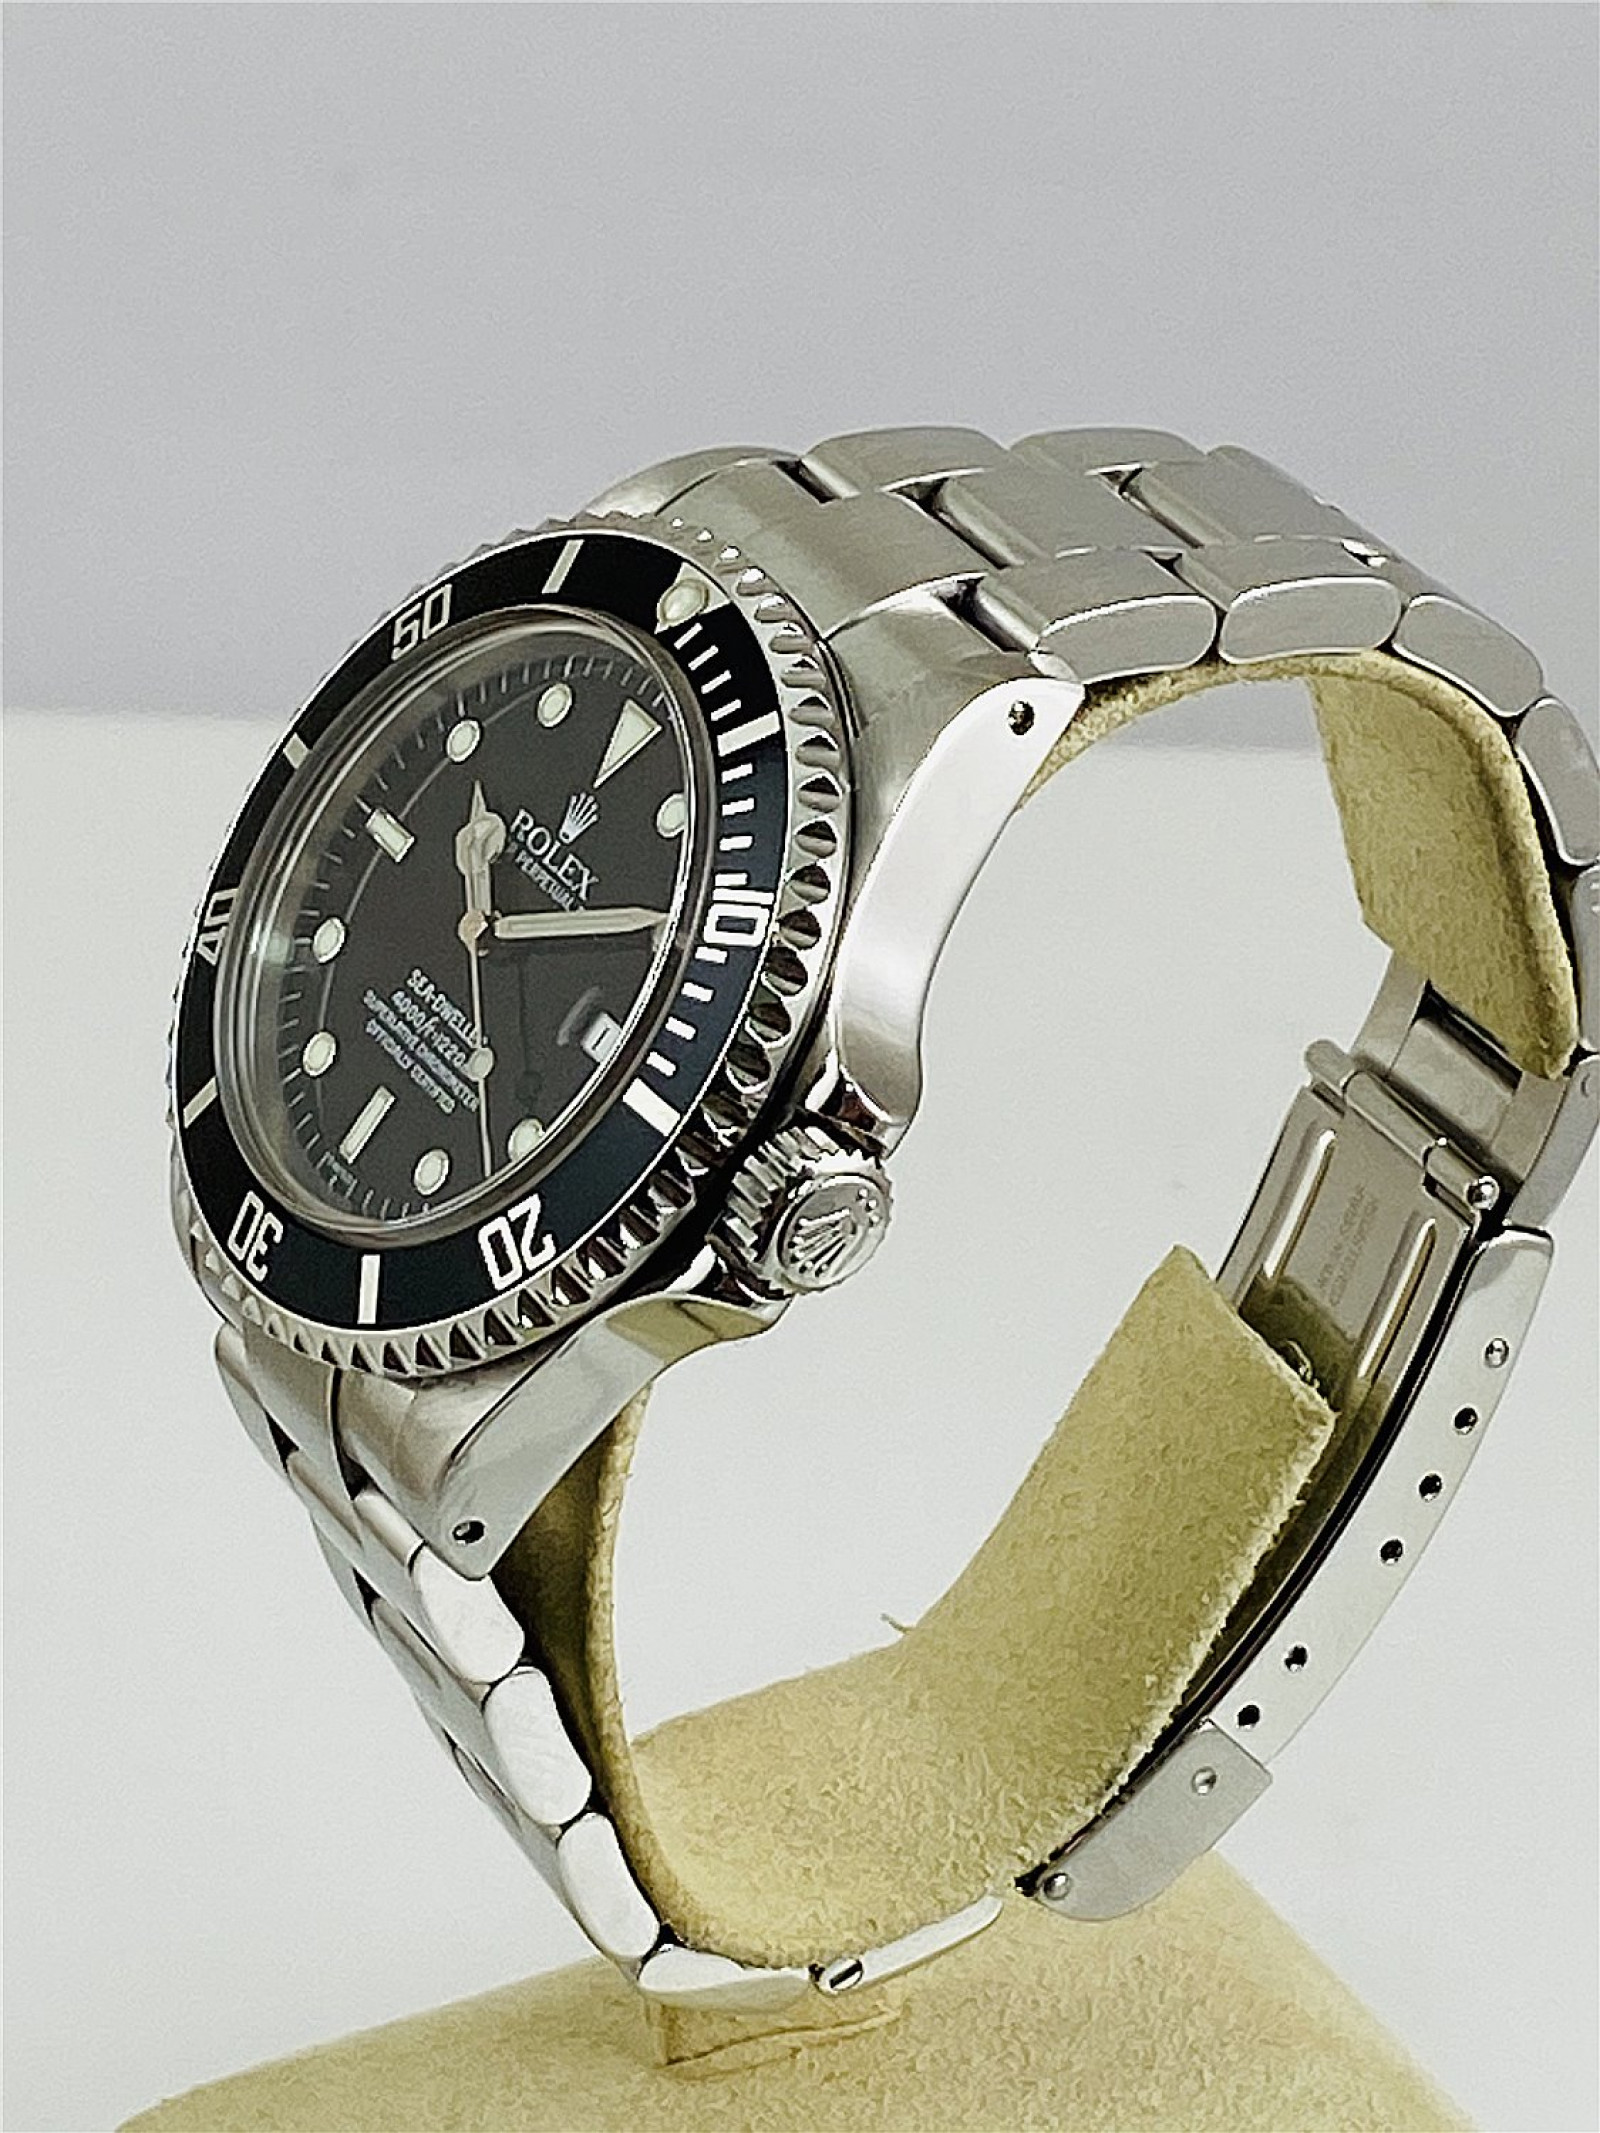 1999 Rolex Sea-Dweller Ref. 16600